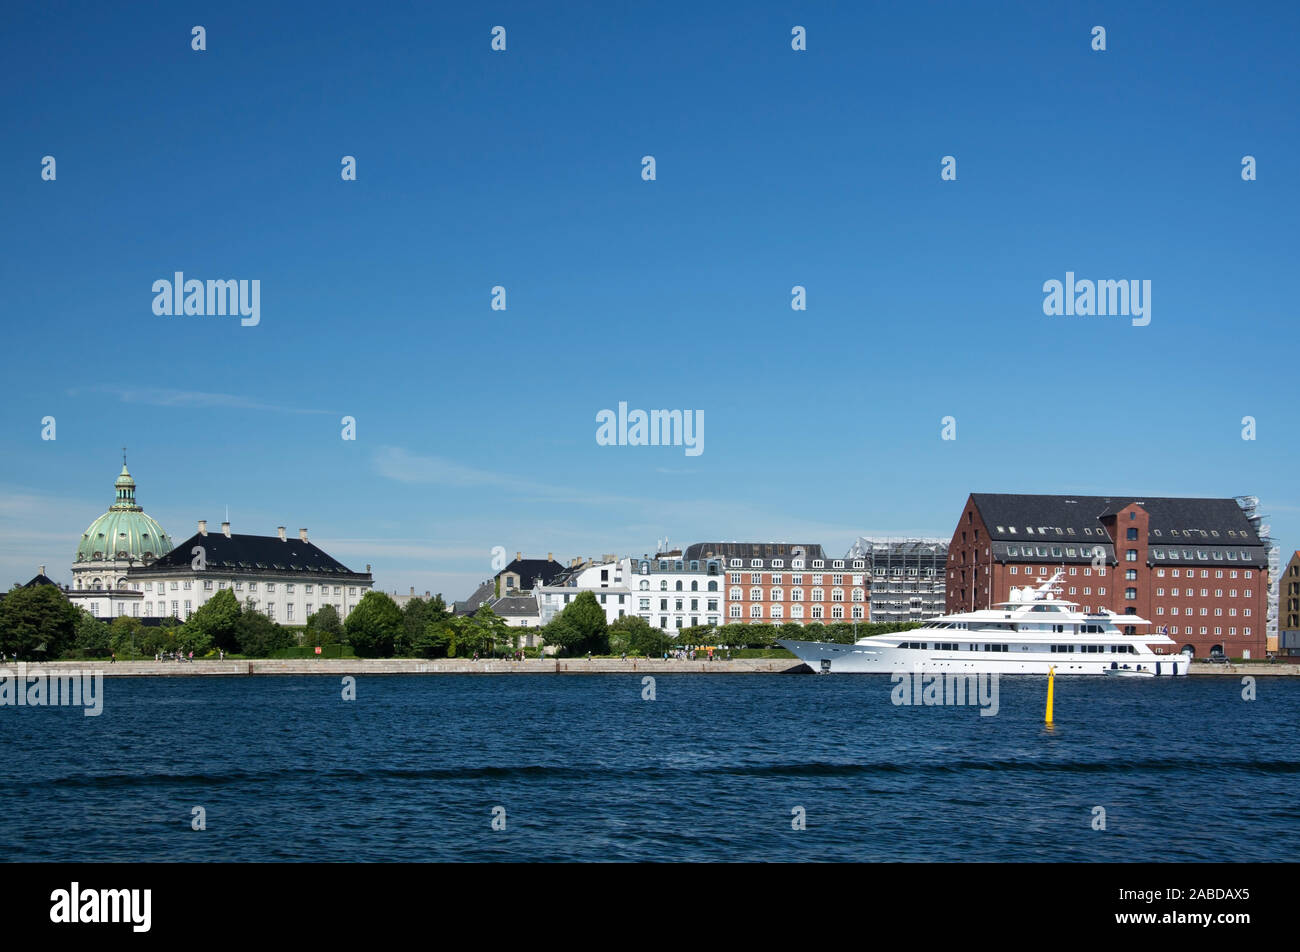 Kopenhagen ist die Hauptstadt Dänemarks und das kulturelle und wirtschaftliche Zentrum des Landes. Foto Stock